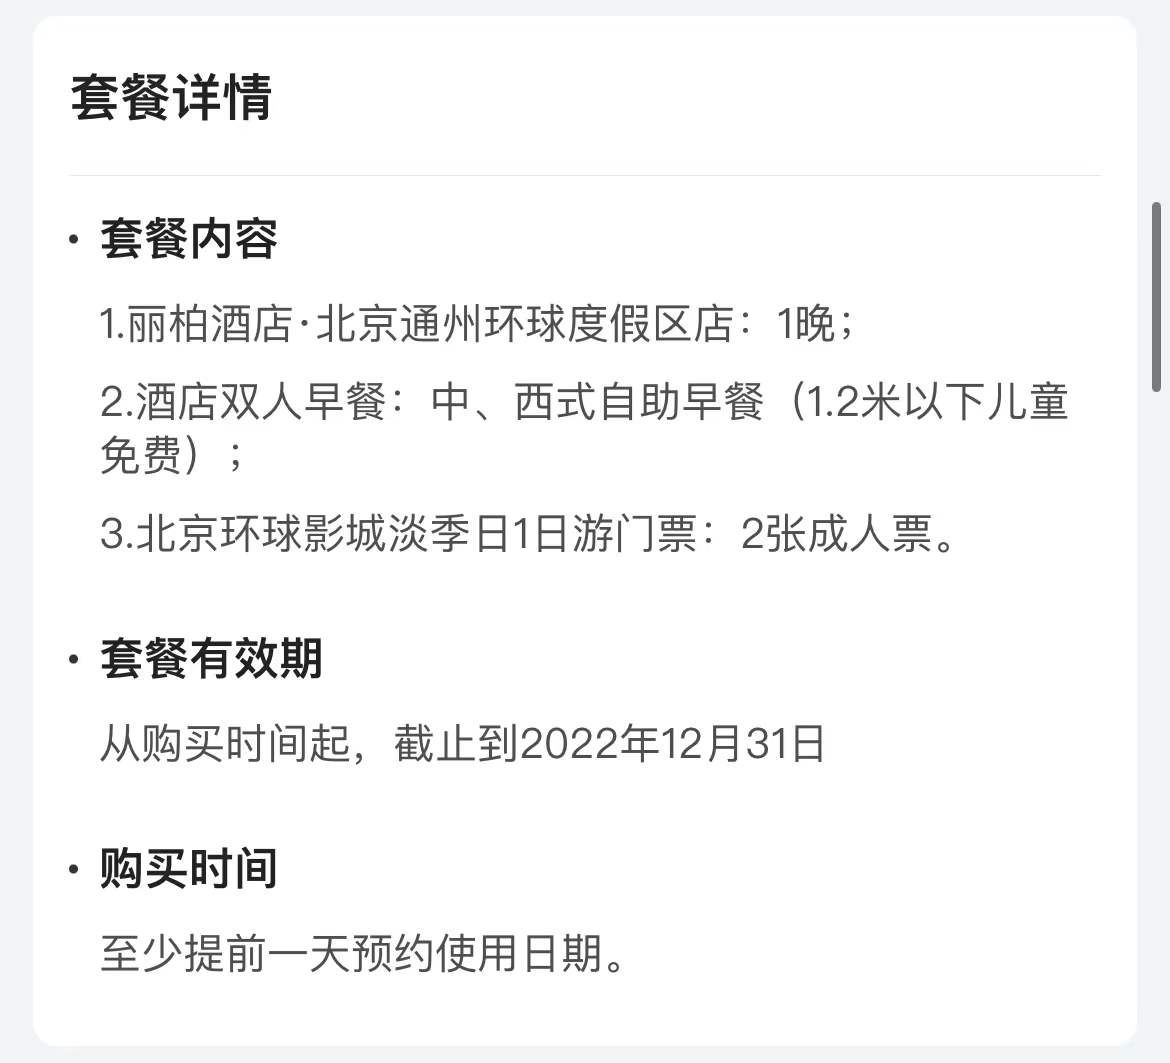 6月15日北京环球影城重启双人嗨玩环球住希尔顿1279超卷